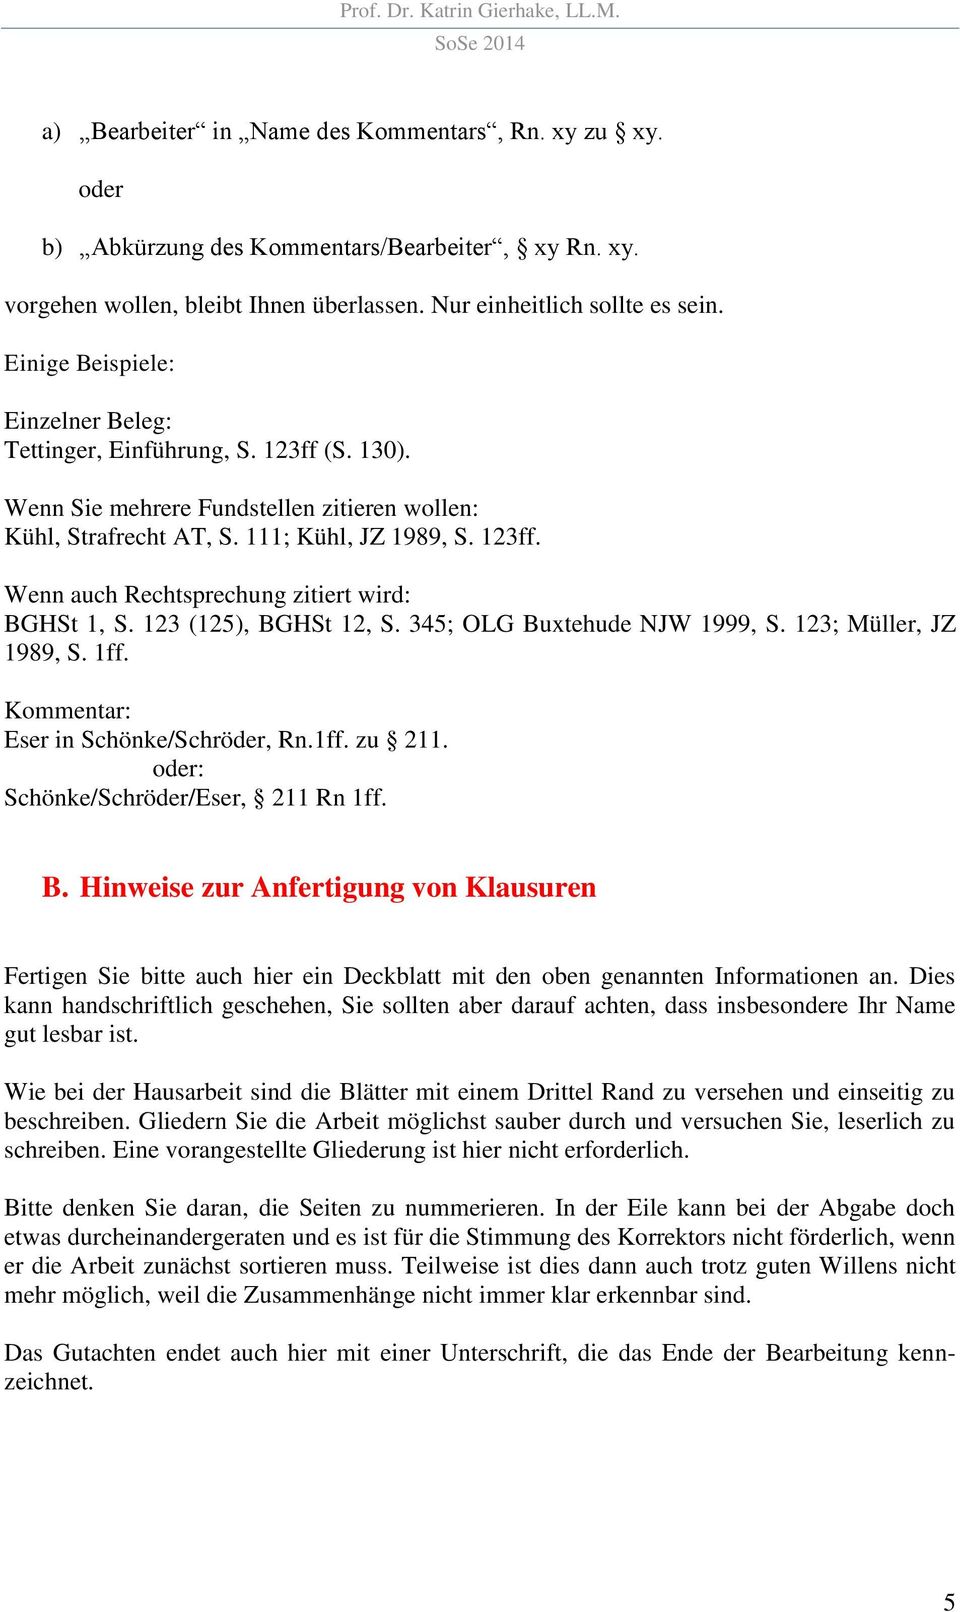 123 (125), BGHSt 12, S. 345; OLG Buxtehude NJW 1999, S. 123; Müller, JZ 1989, S. 1ff. Kommentar: Eser in Schönke/Schröder, Rn.1ff. zu 211. oder: Schönke/Schröder/Eser, 211 Rn 1ff. B. Hinweise zur Anfertigung von Klausuren Fertigen Sie bitte auch hier ein Deckblatt mit den oben genannten Informationen an.